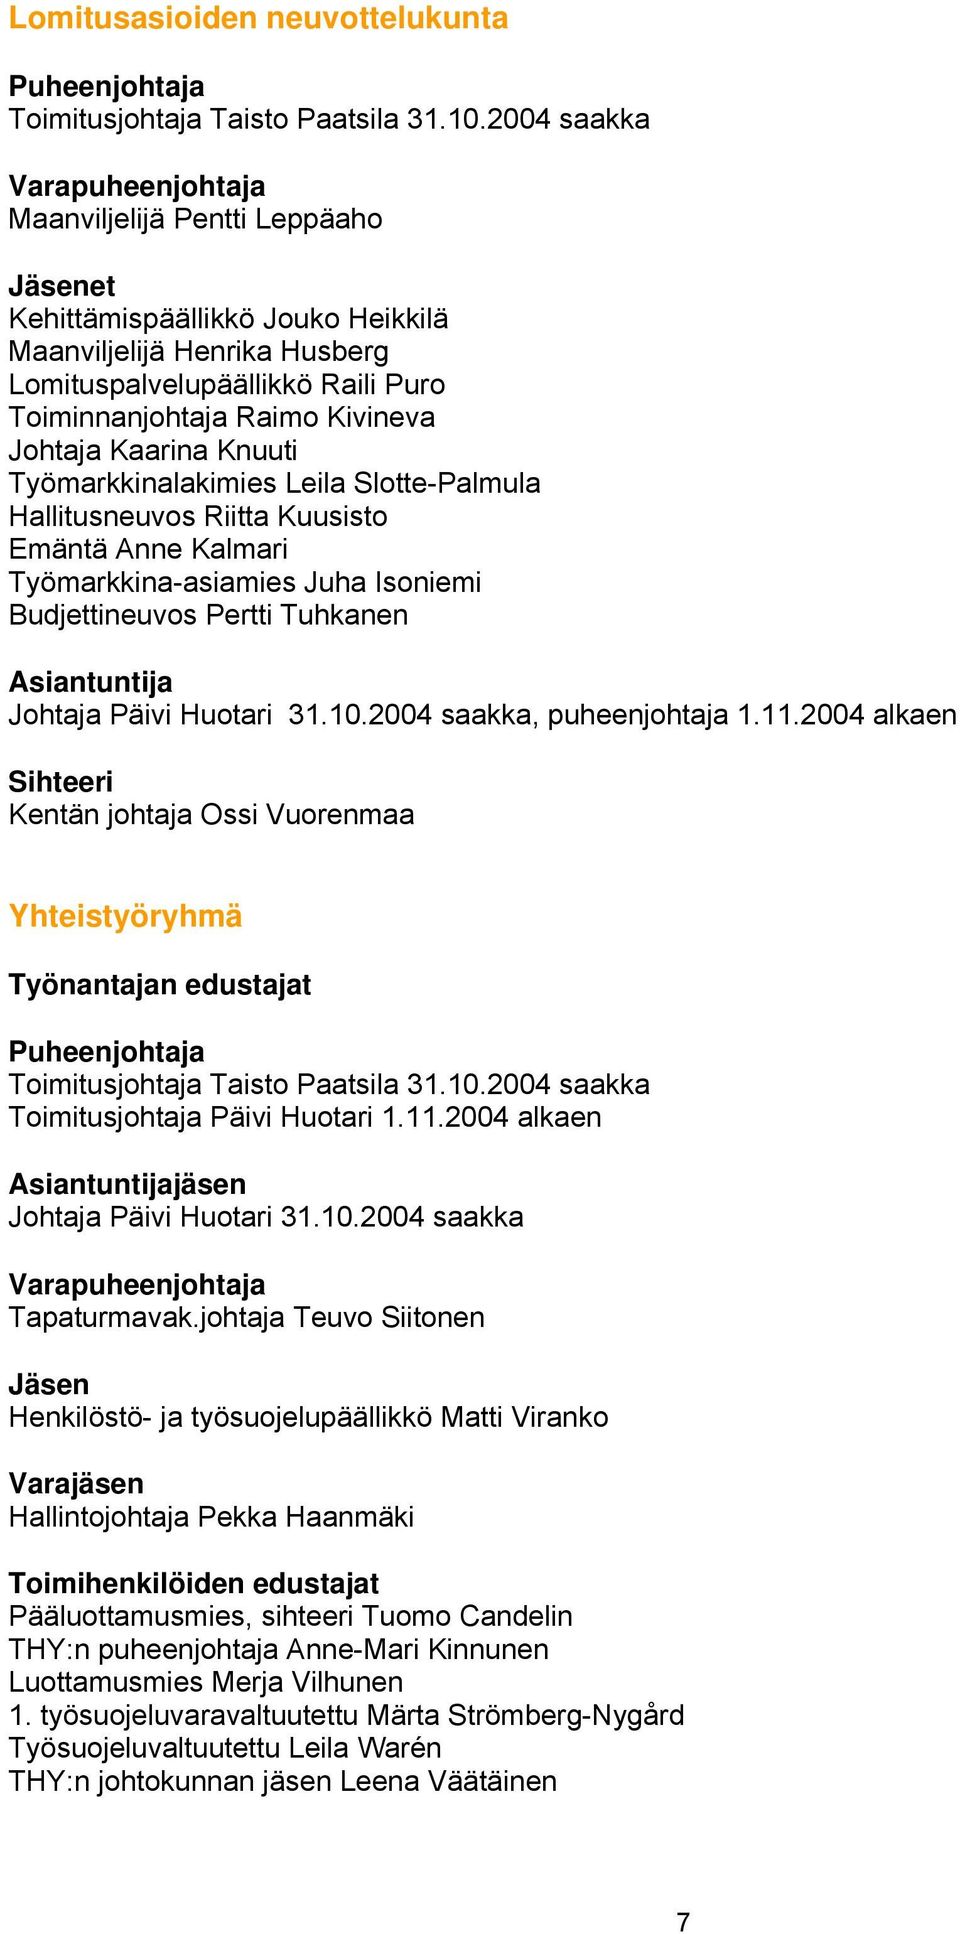 Työnantajan edustajat Toimitusjohtaja Päivi Huotari 1.11.2004 alkaen jäsen Johtaja Päivi Huotari 31.10.2004 saakka Tapaturmavak.